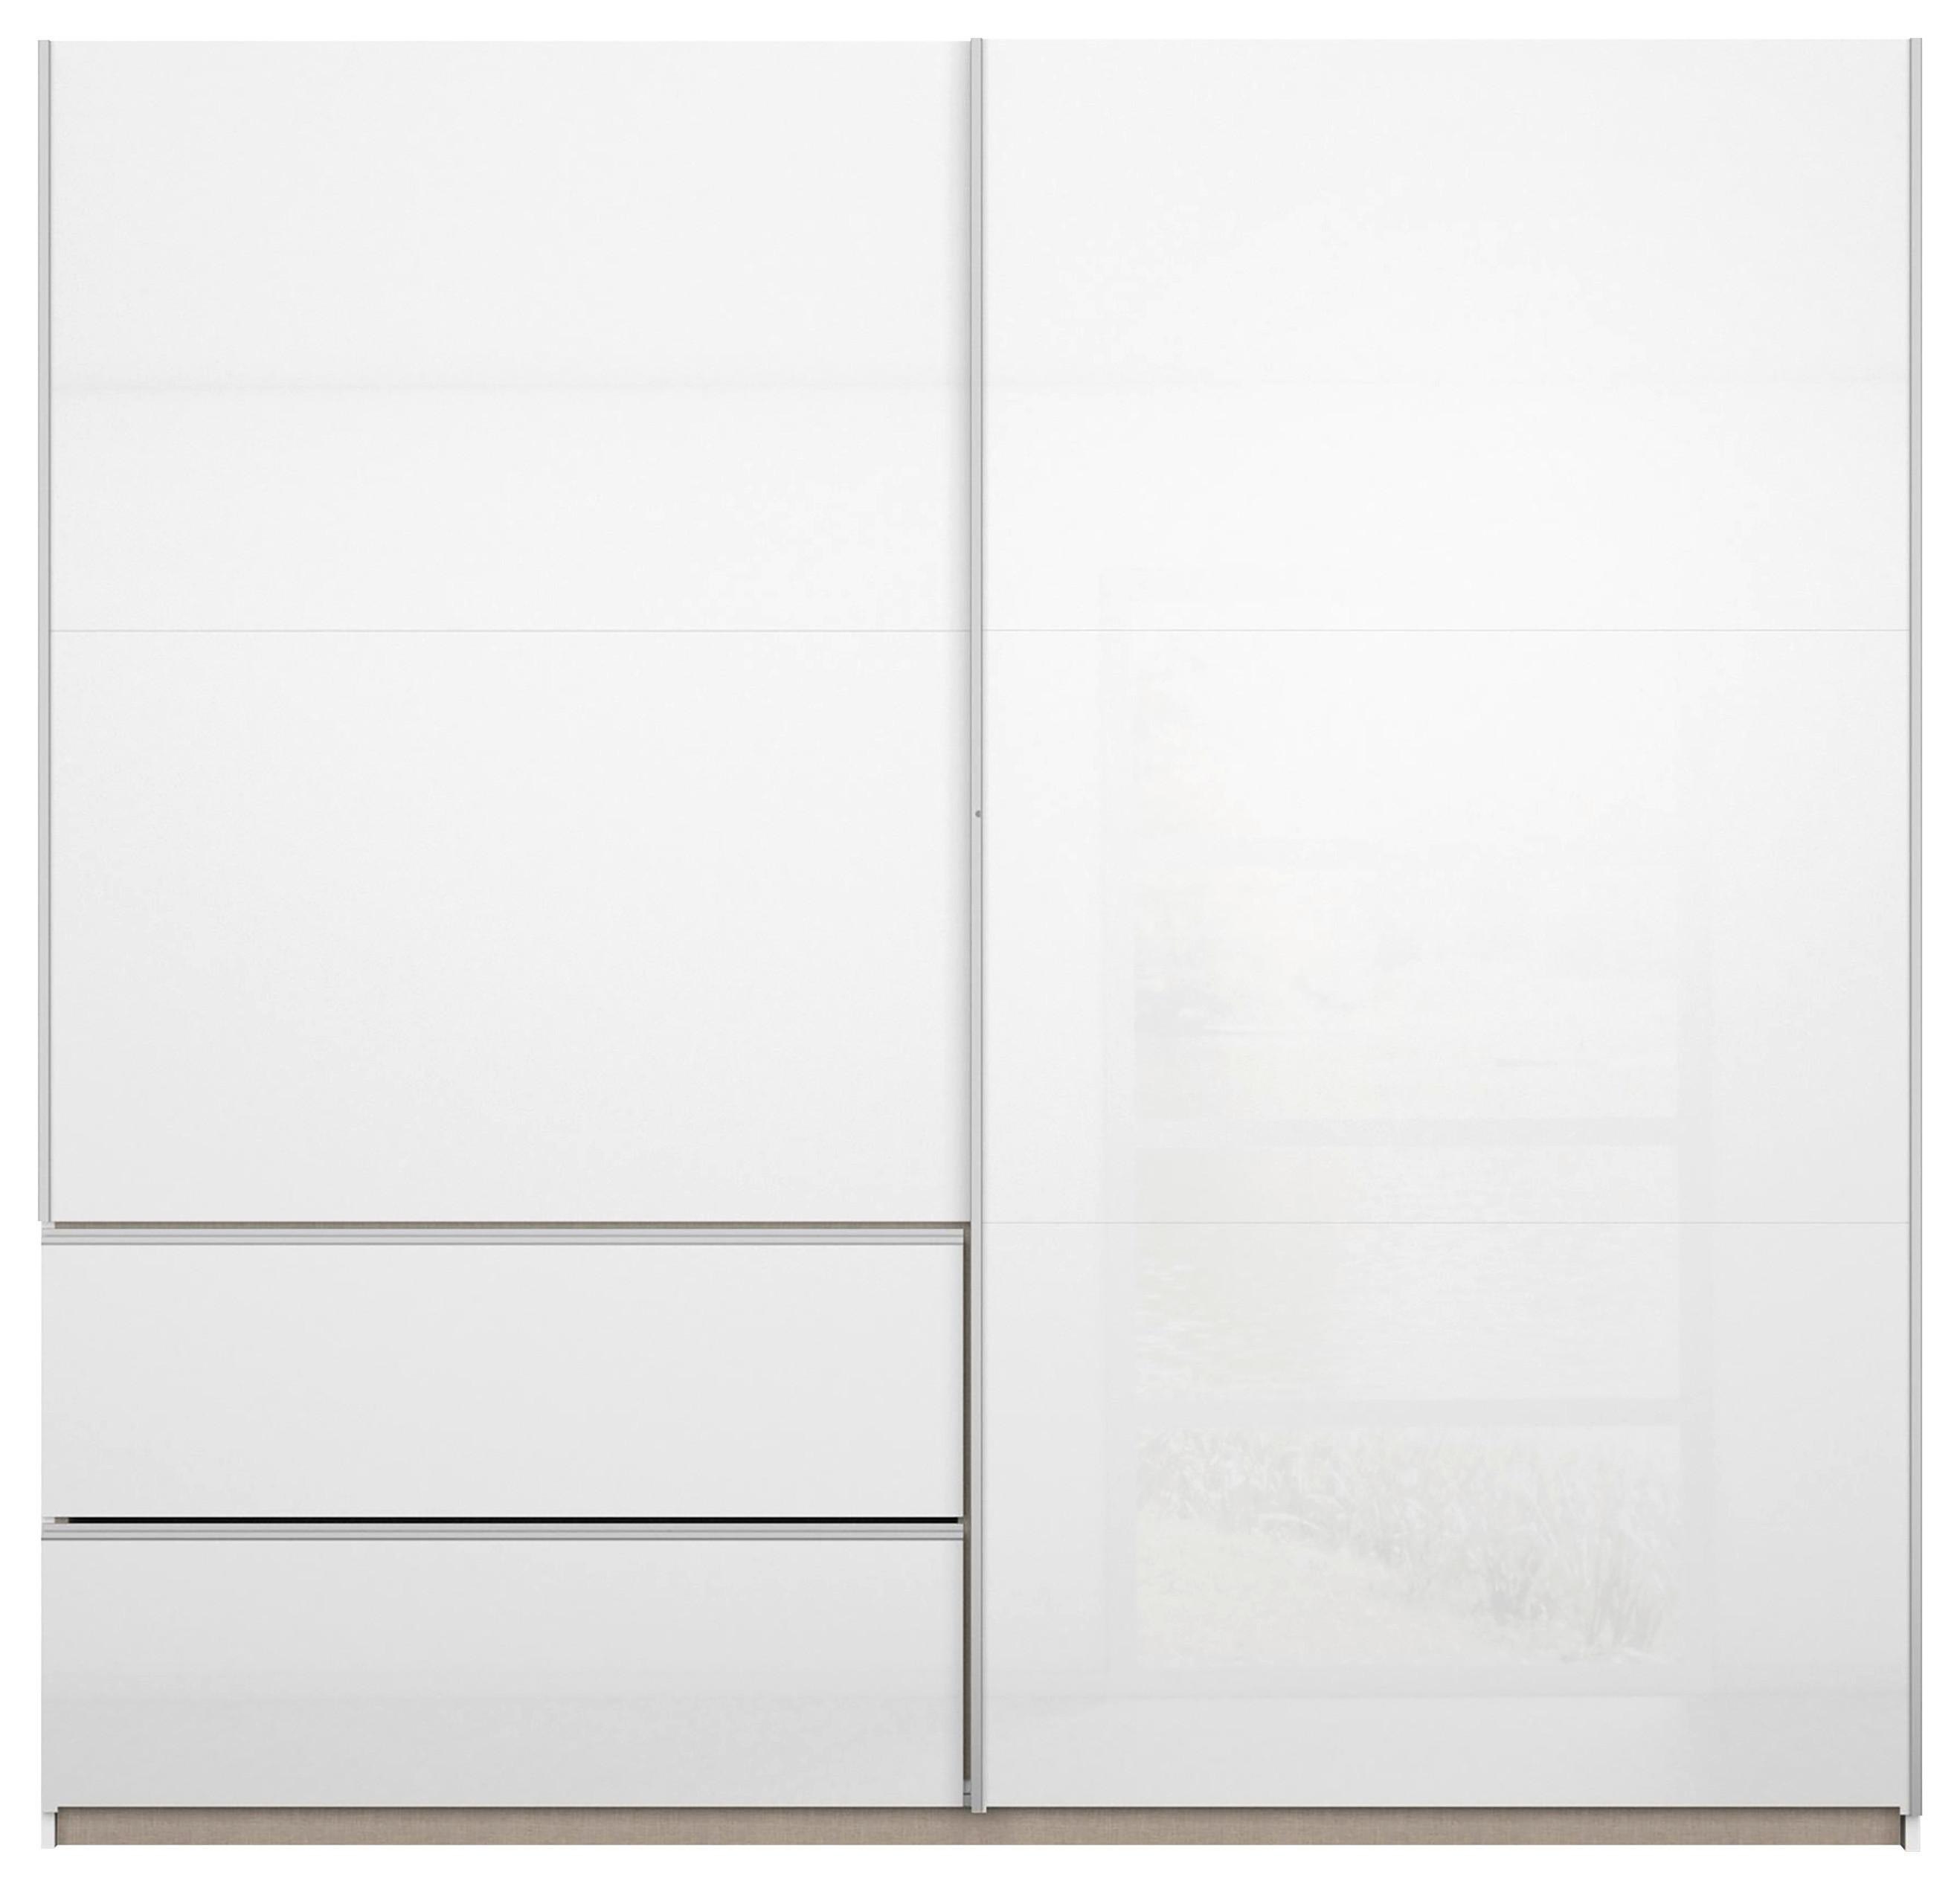 Šatní Skříň Sevilla, Bílá, 218cm - bílá/barvy hliníku, Konvenční, kov/kompozitní dřevo (218/210/59cm) - Modern Living